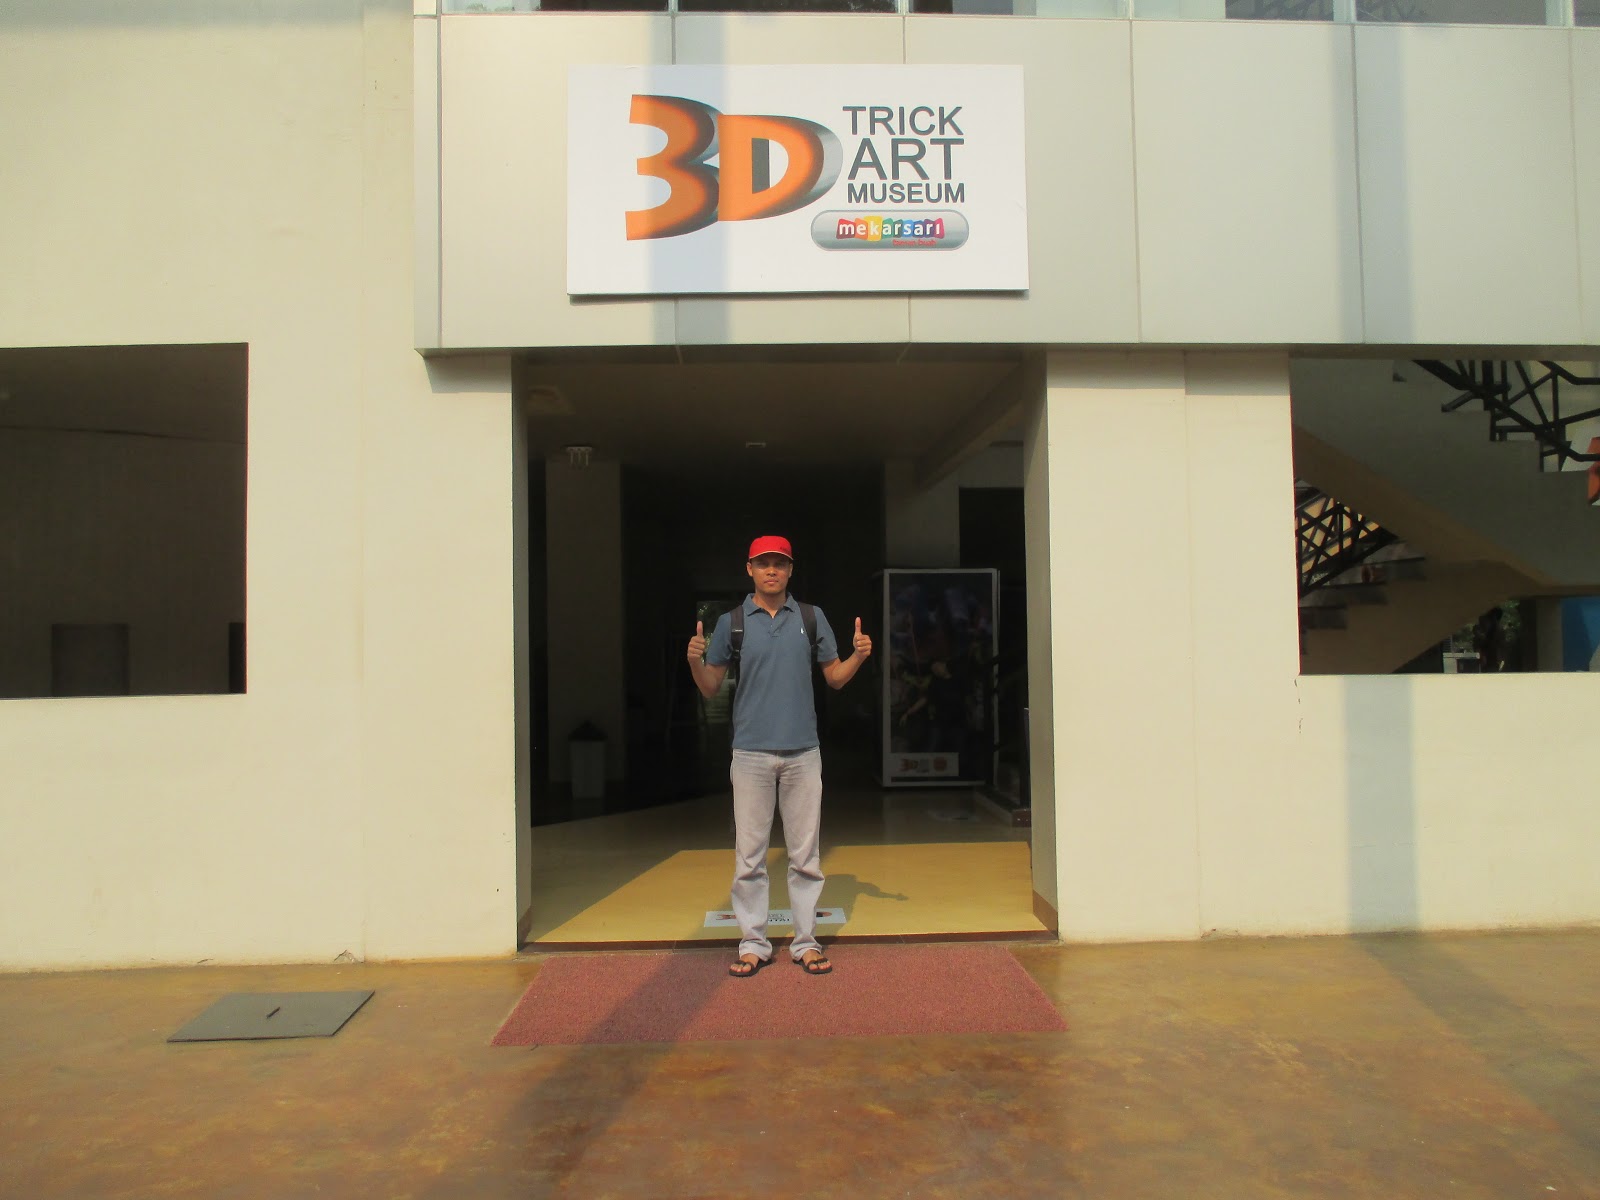 My Journey Museum 3D Trick Art Mekarsari